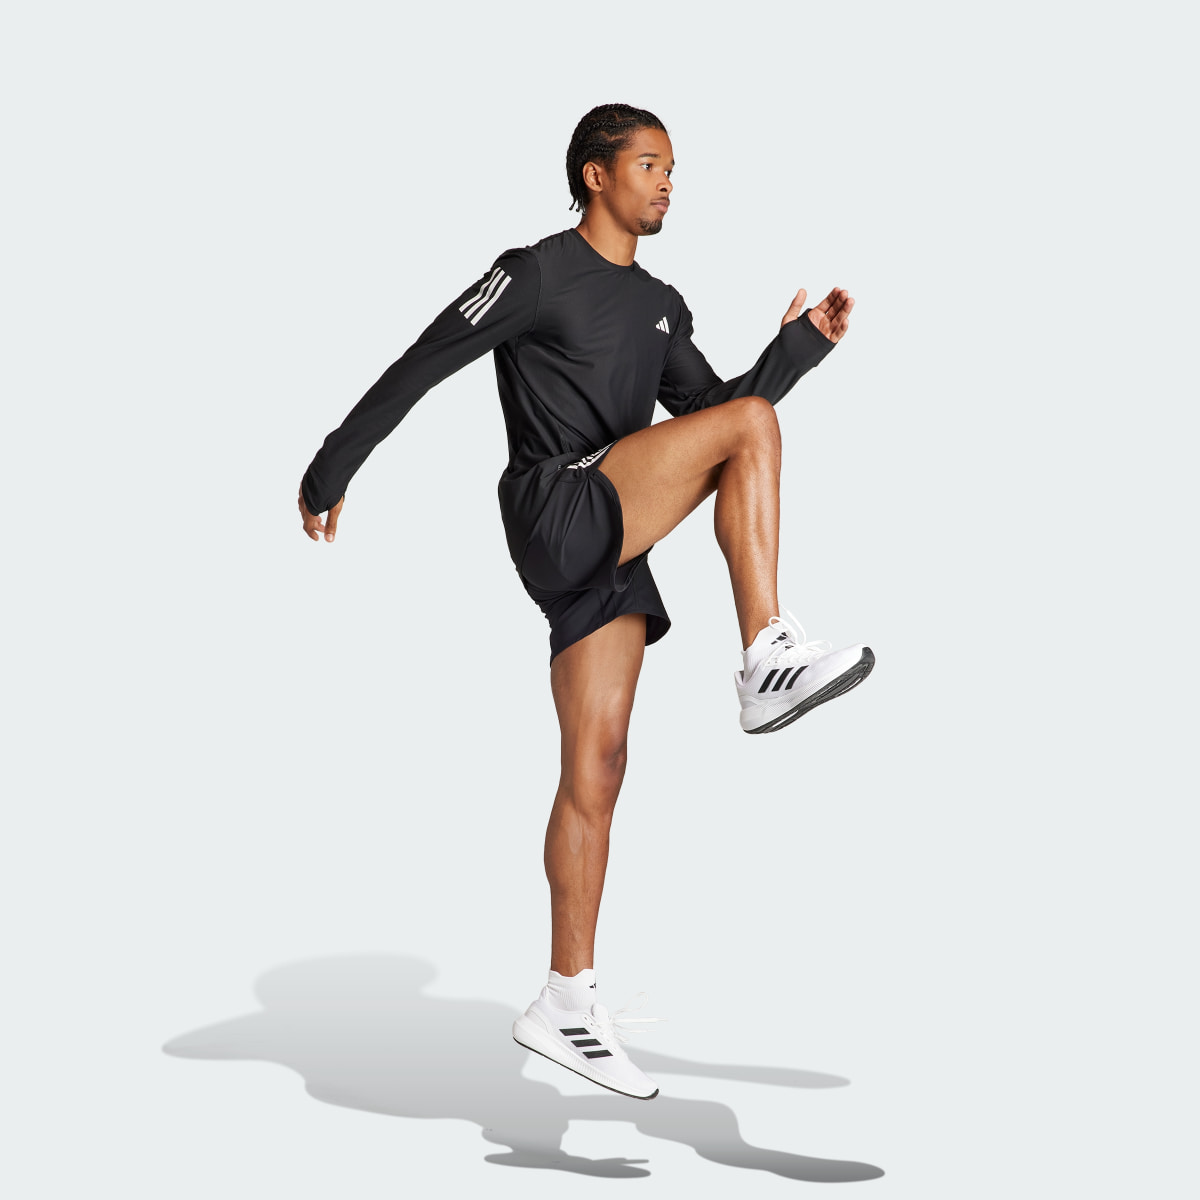 Adidas Own The Run Long Sleeve Tee. 4